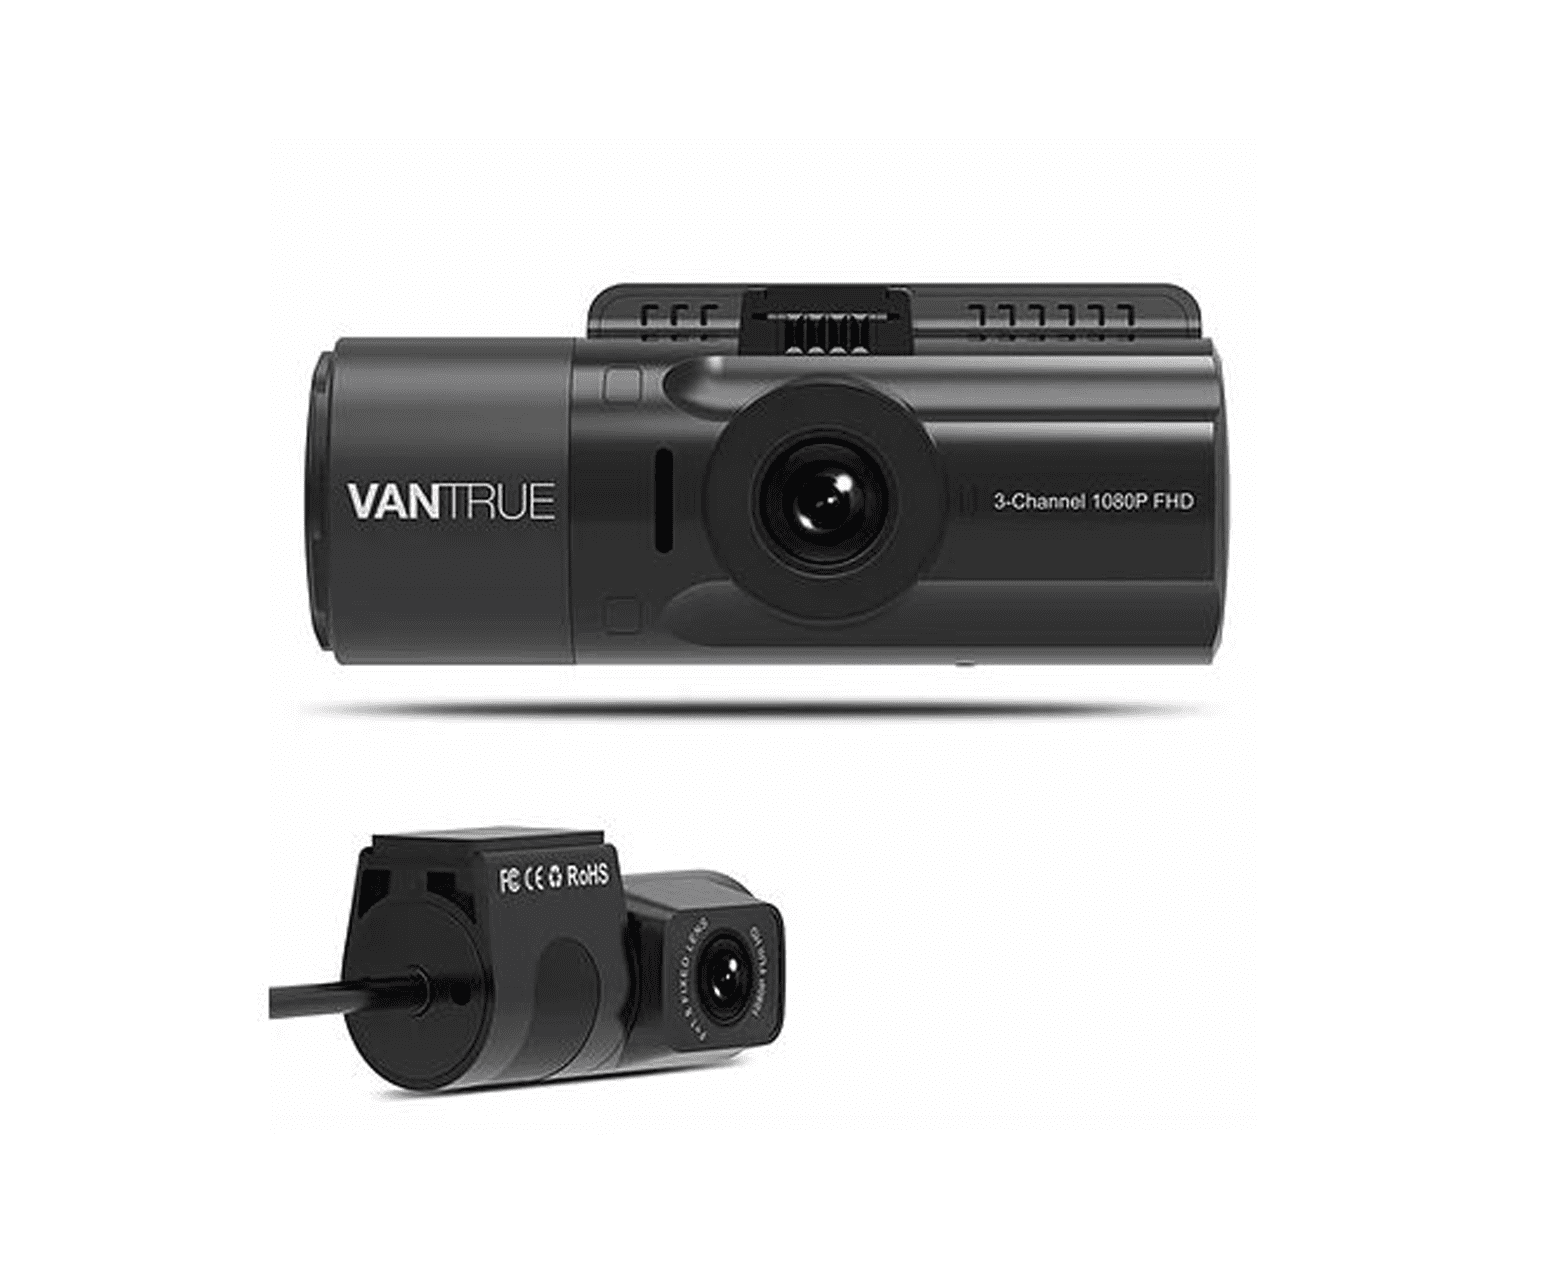 Vantrue N4 3 Channel 1440p Dashcam | mit GPS - Bundle